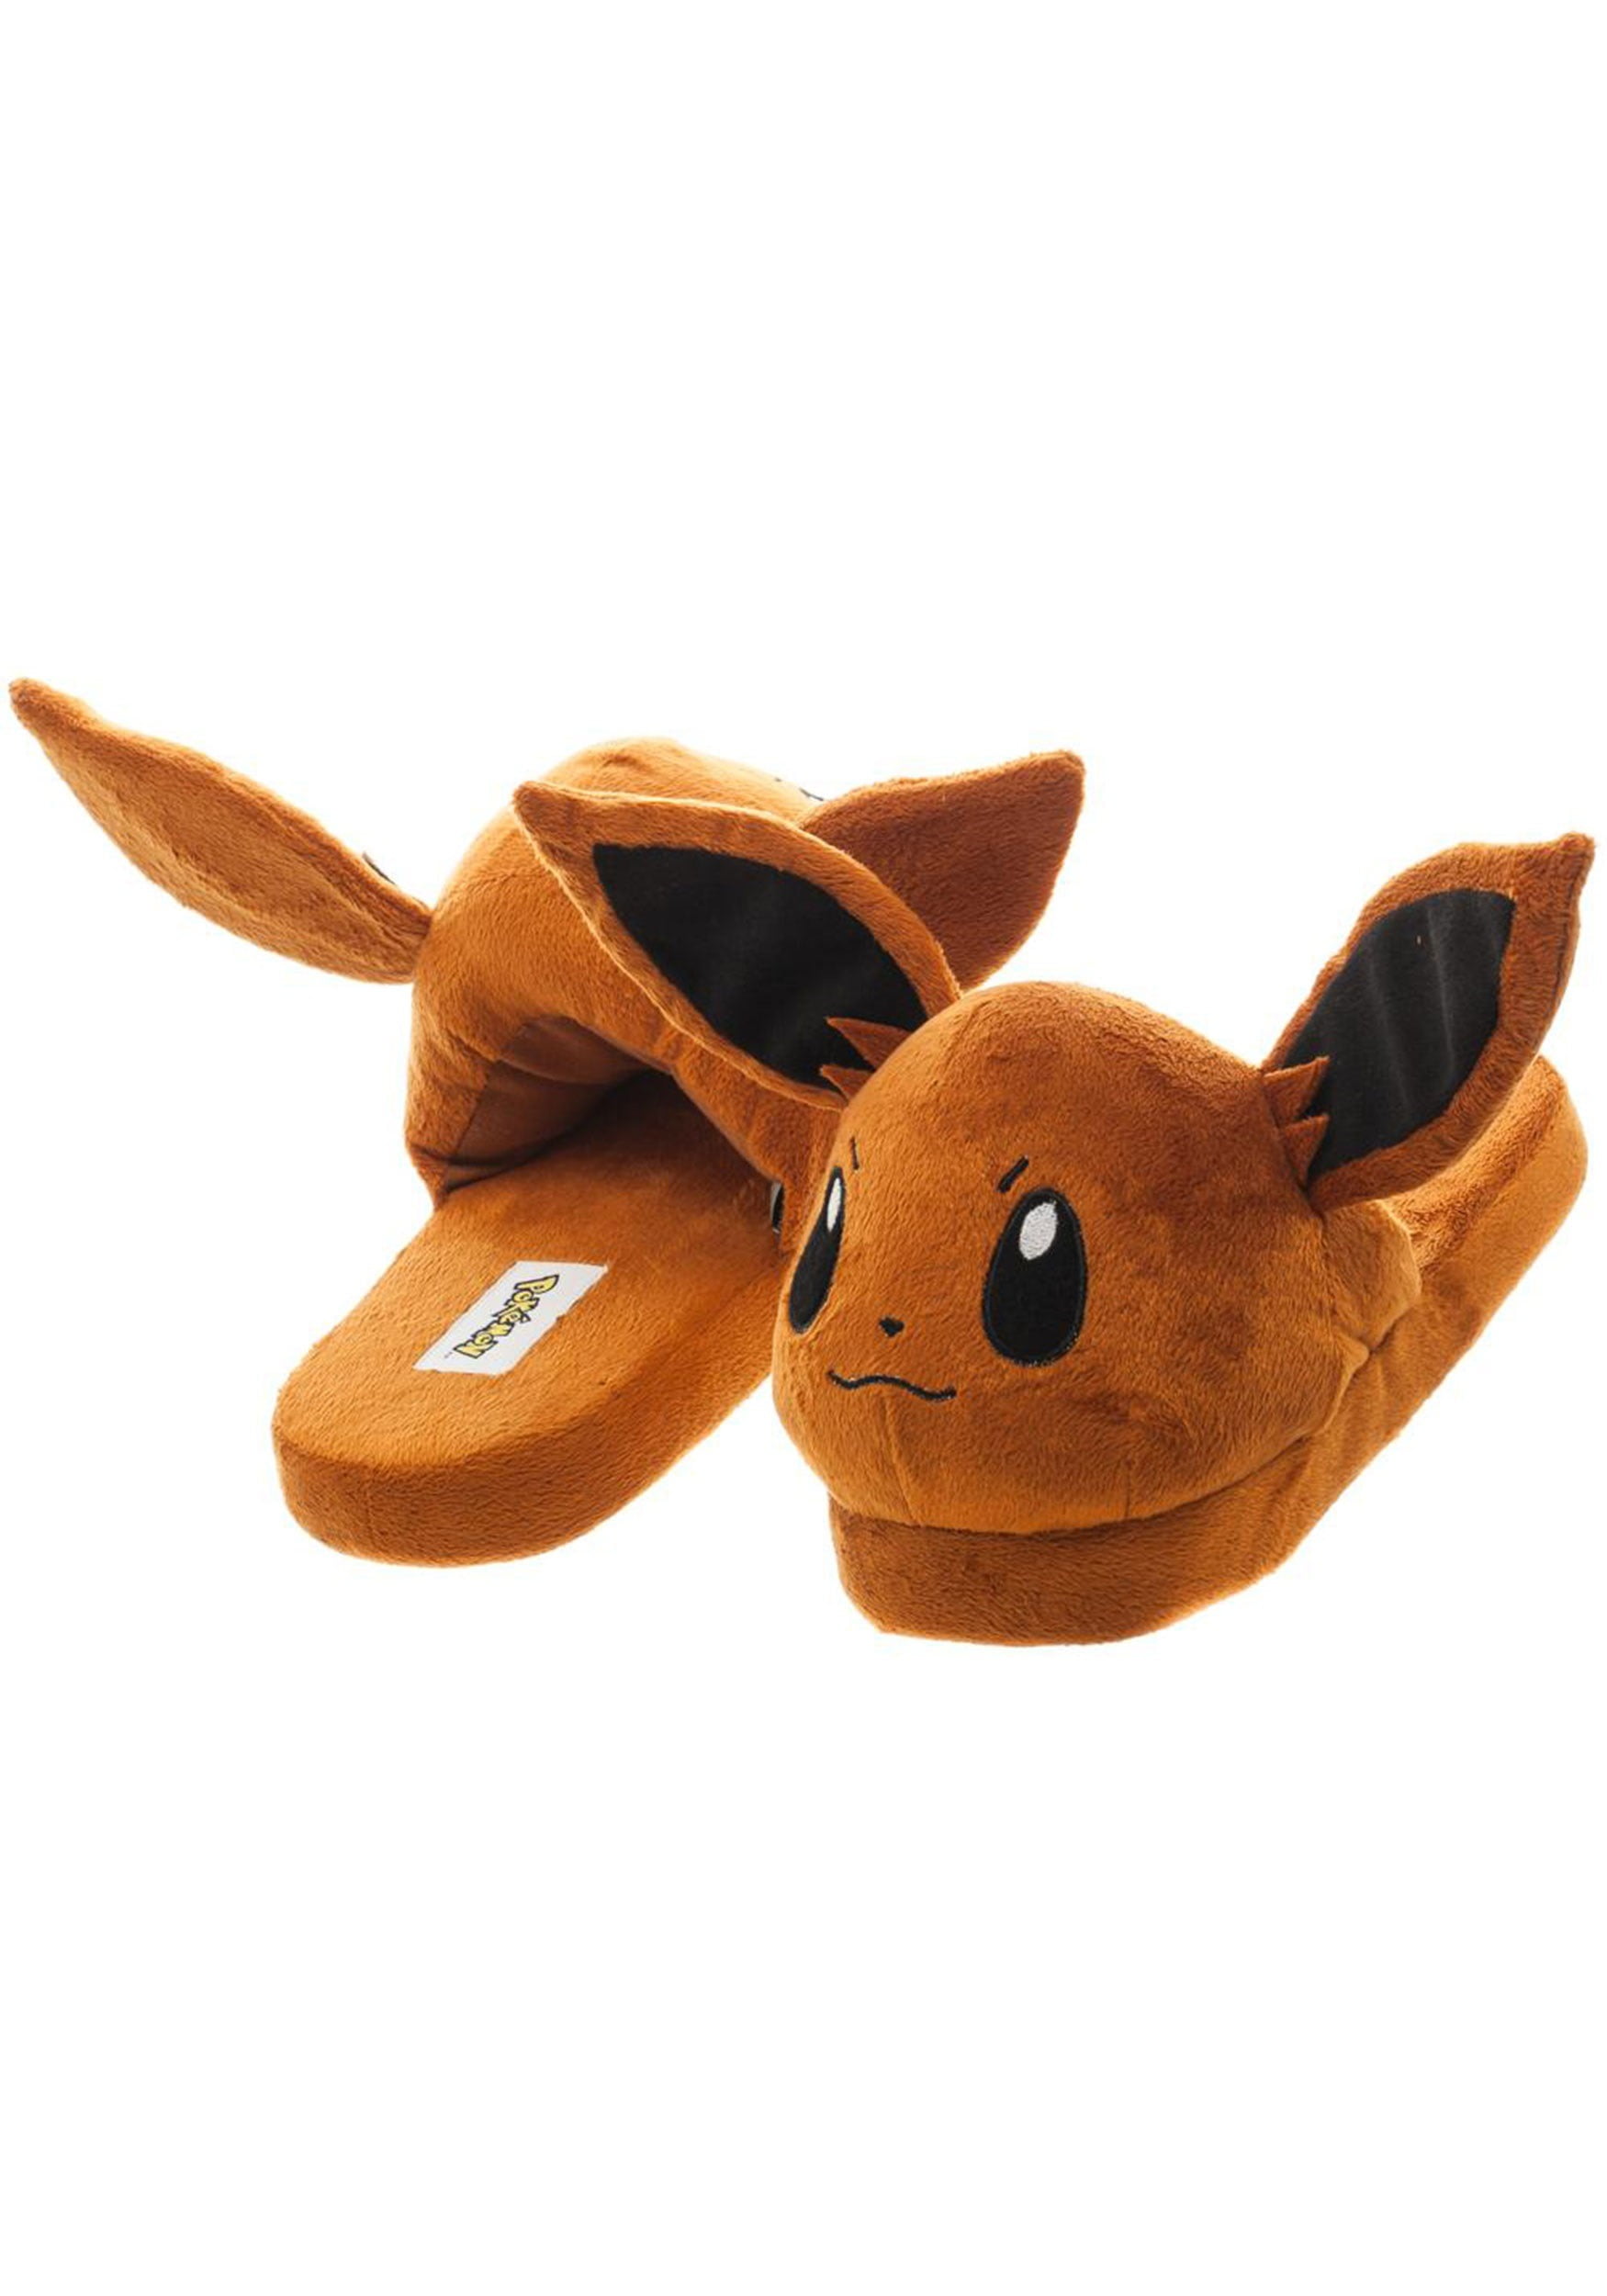 pikachu slippers walmart